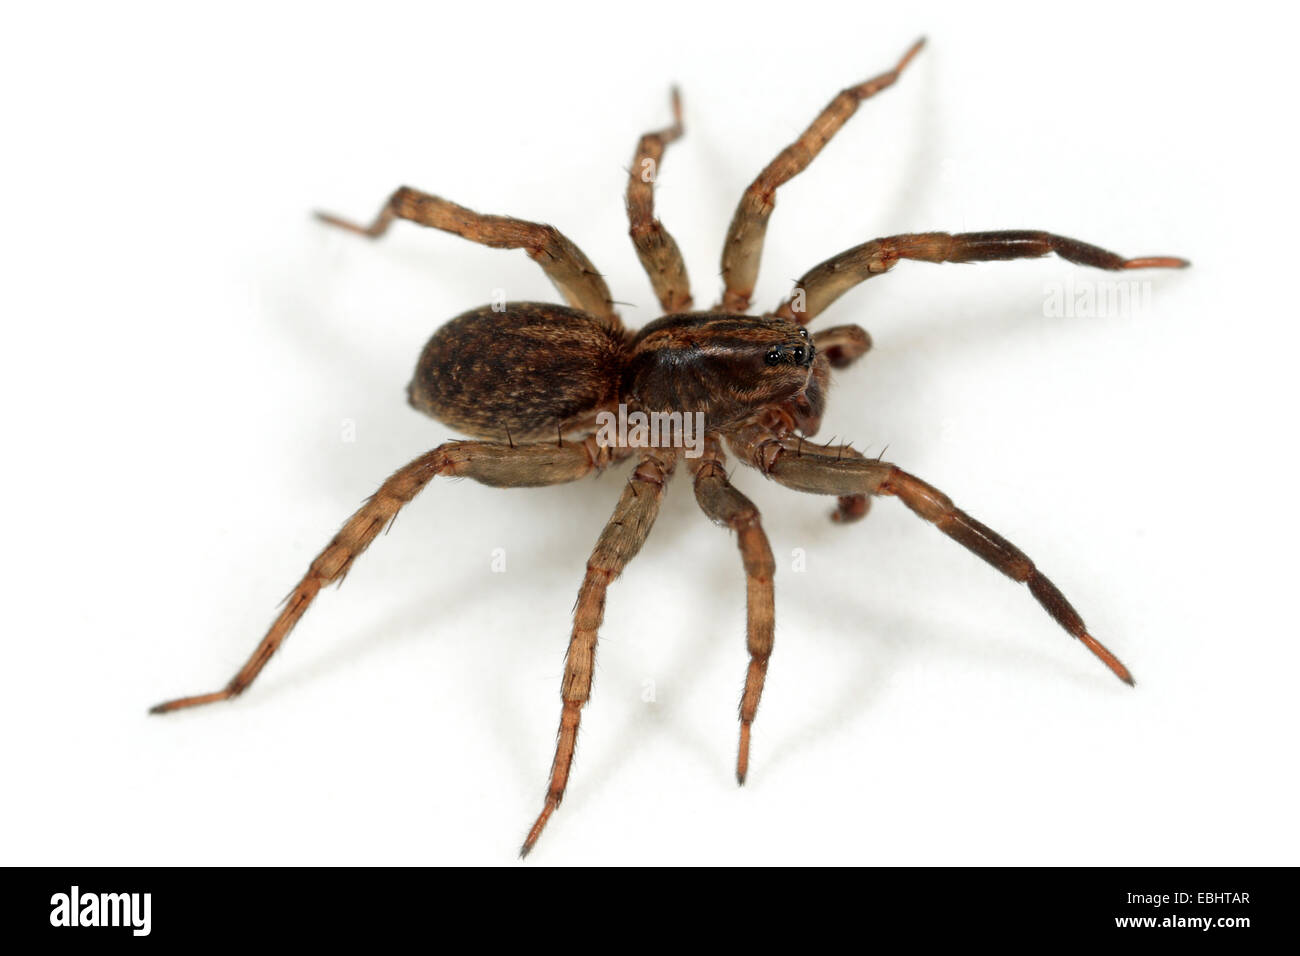 Lupo maschio spider (Trochosa terricola) su sfondo bianco. Lupo ragni sono parte della famiglia Lycosidae. Foto Stock